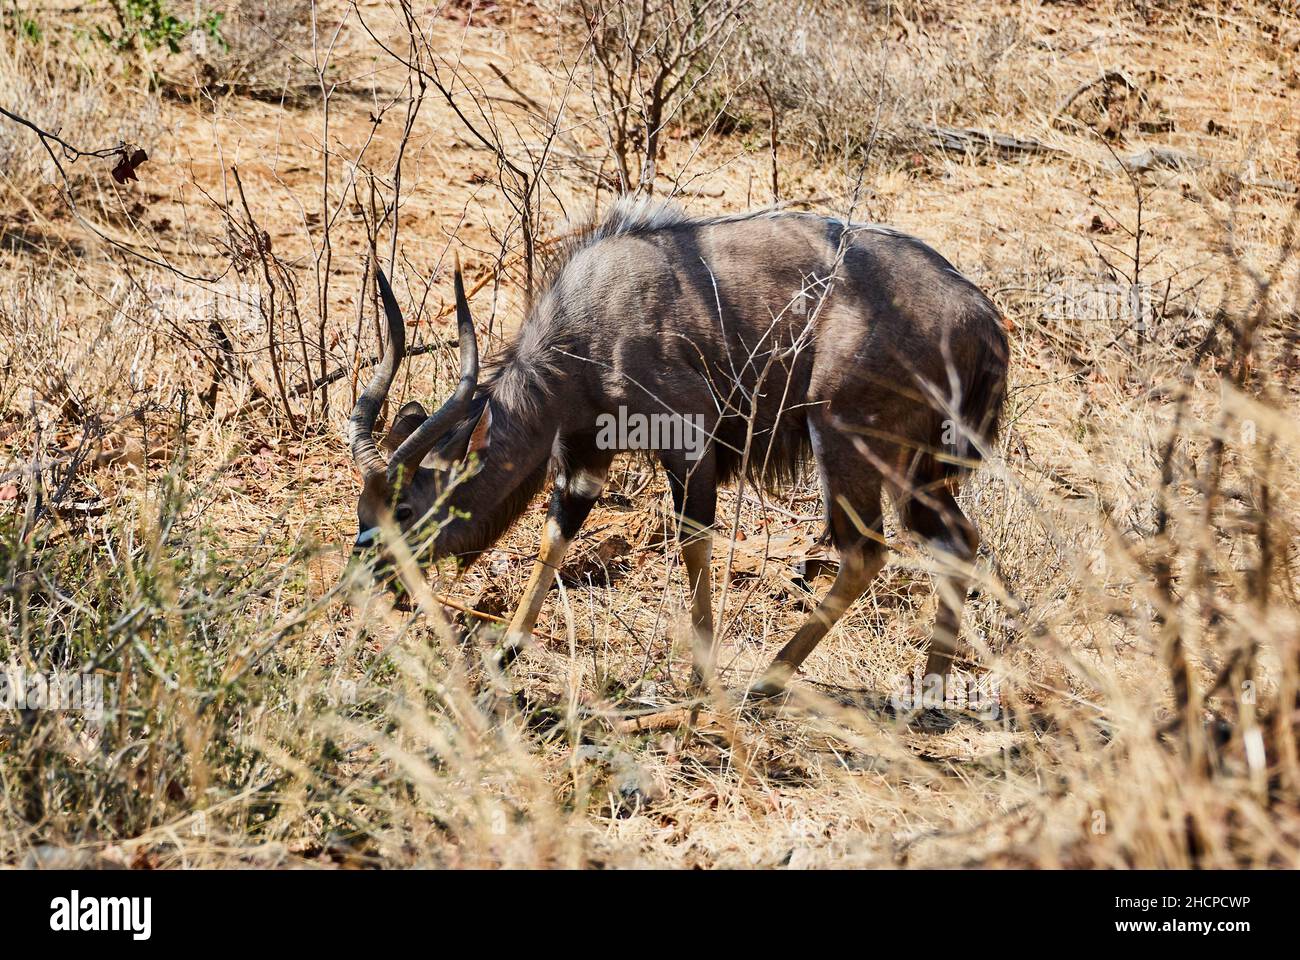 Der starke und stolze Nyala-Bulle, Tragelaphus angasii, ist eine spiralförmige gehörnte Antilope aus dem südlichen Afrika, die in der Landschaft des afrikanischen Buschs herumläuft Stockfoto